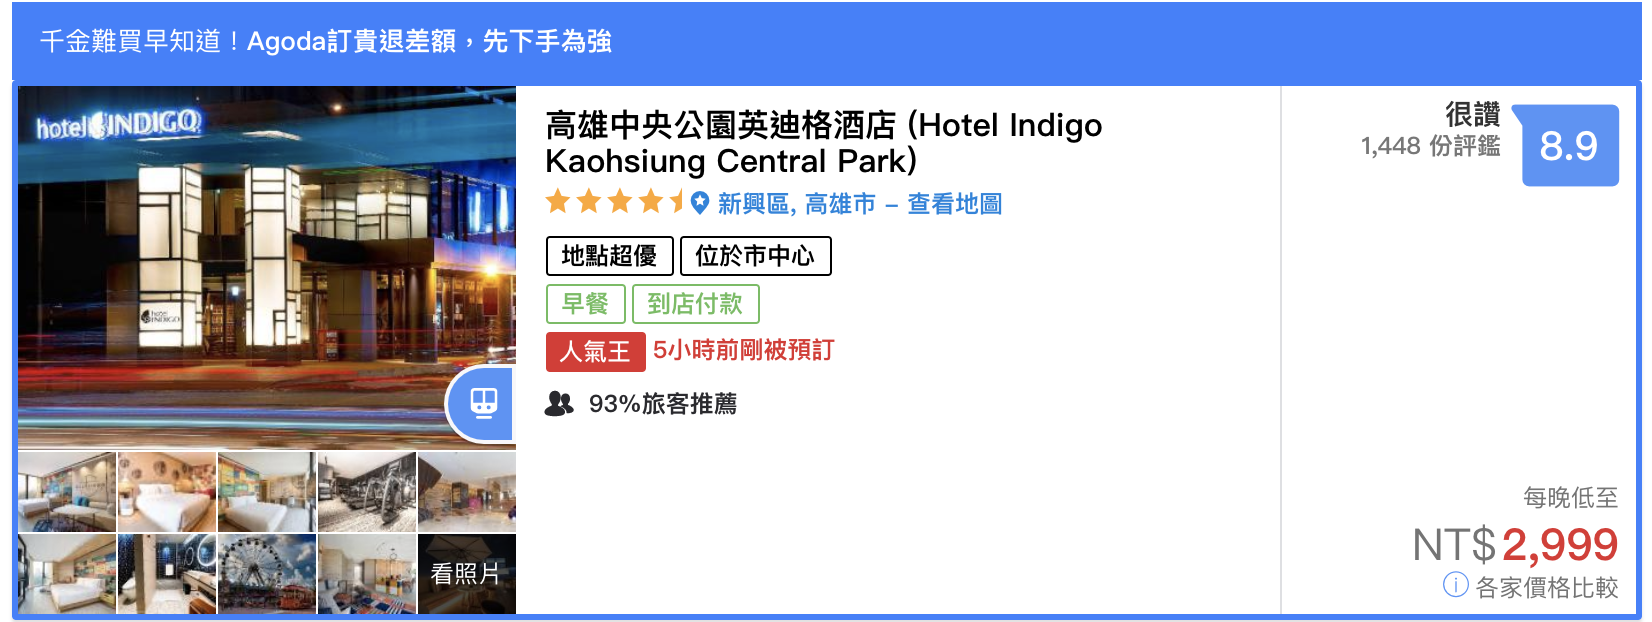 hotel indigo kaohsiung central park 高雄中央公園英迪格酒店，推出住二免一活動，平均2300元一晚喔～